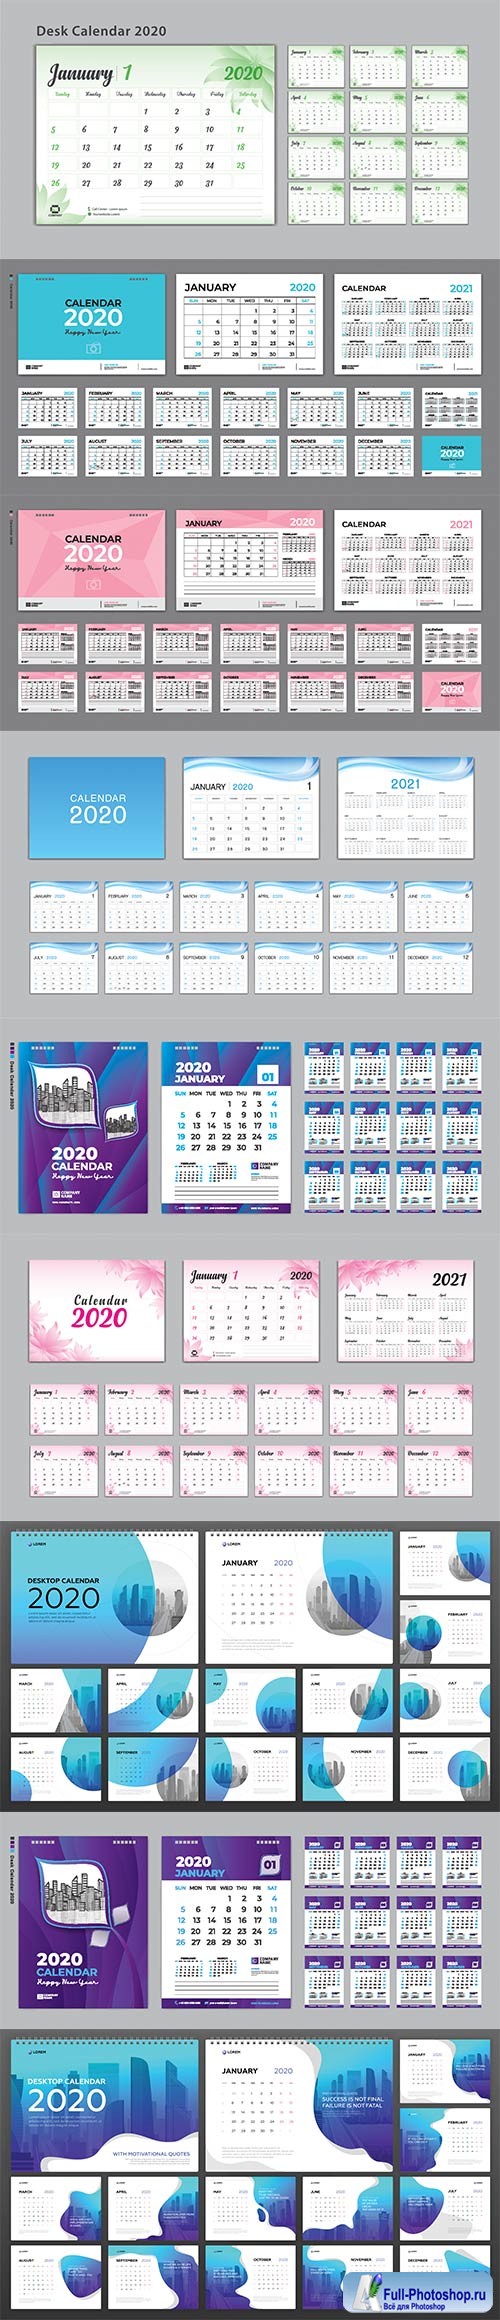 Desktop Calendar 2020 template for business